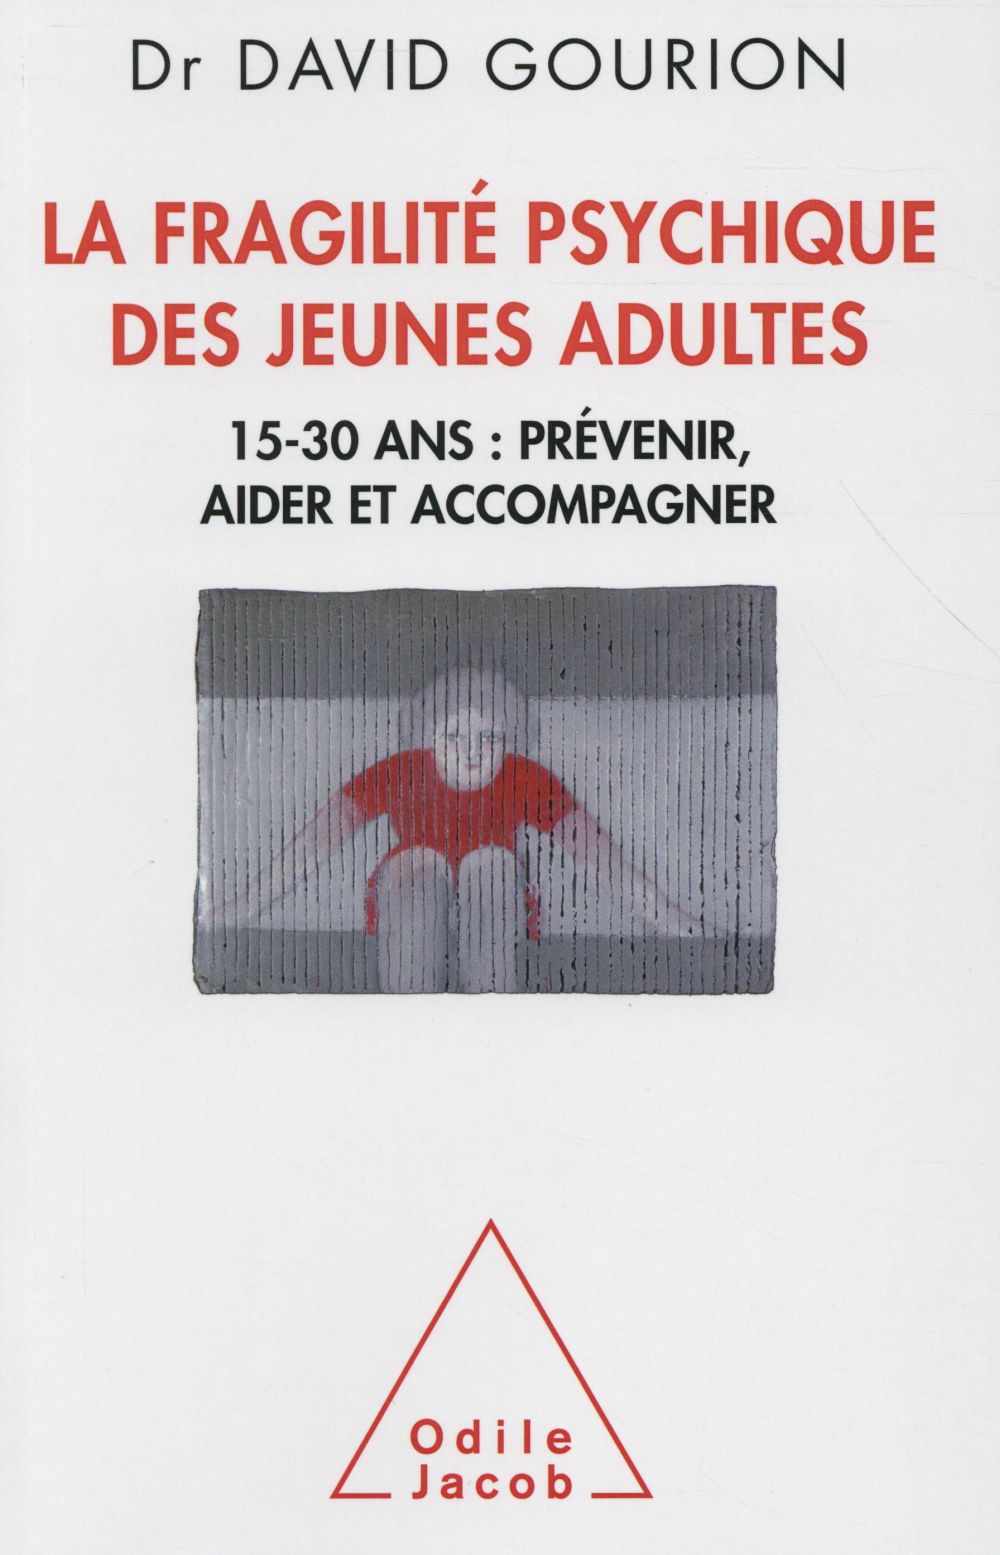 LA FRAGILITE DES JEUNES ADULTES - 15-30 ANS: PREVENIR, AIDER,ACCOMPAGNER